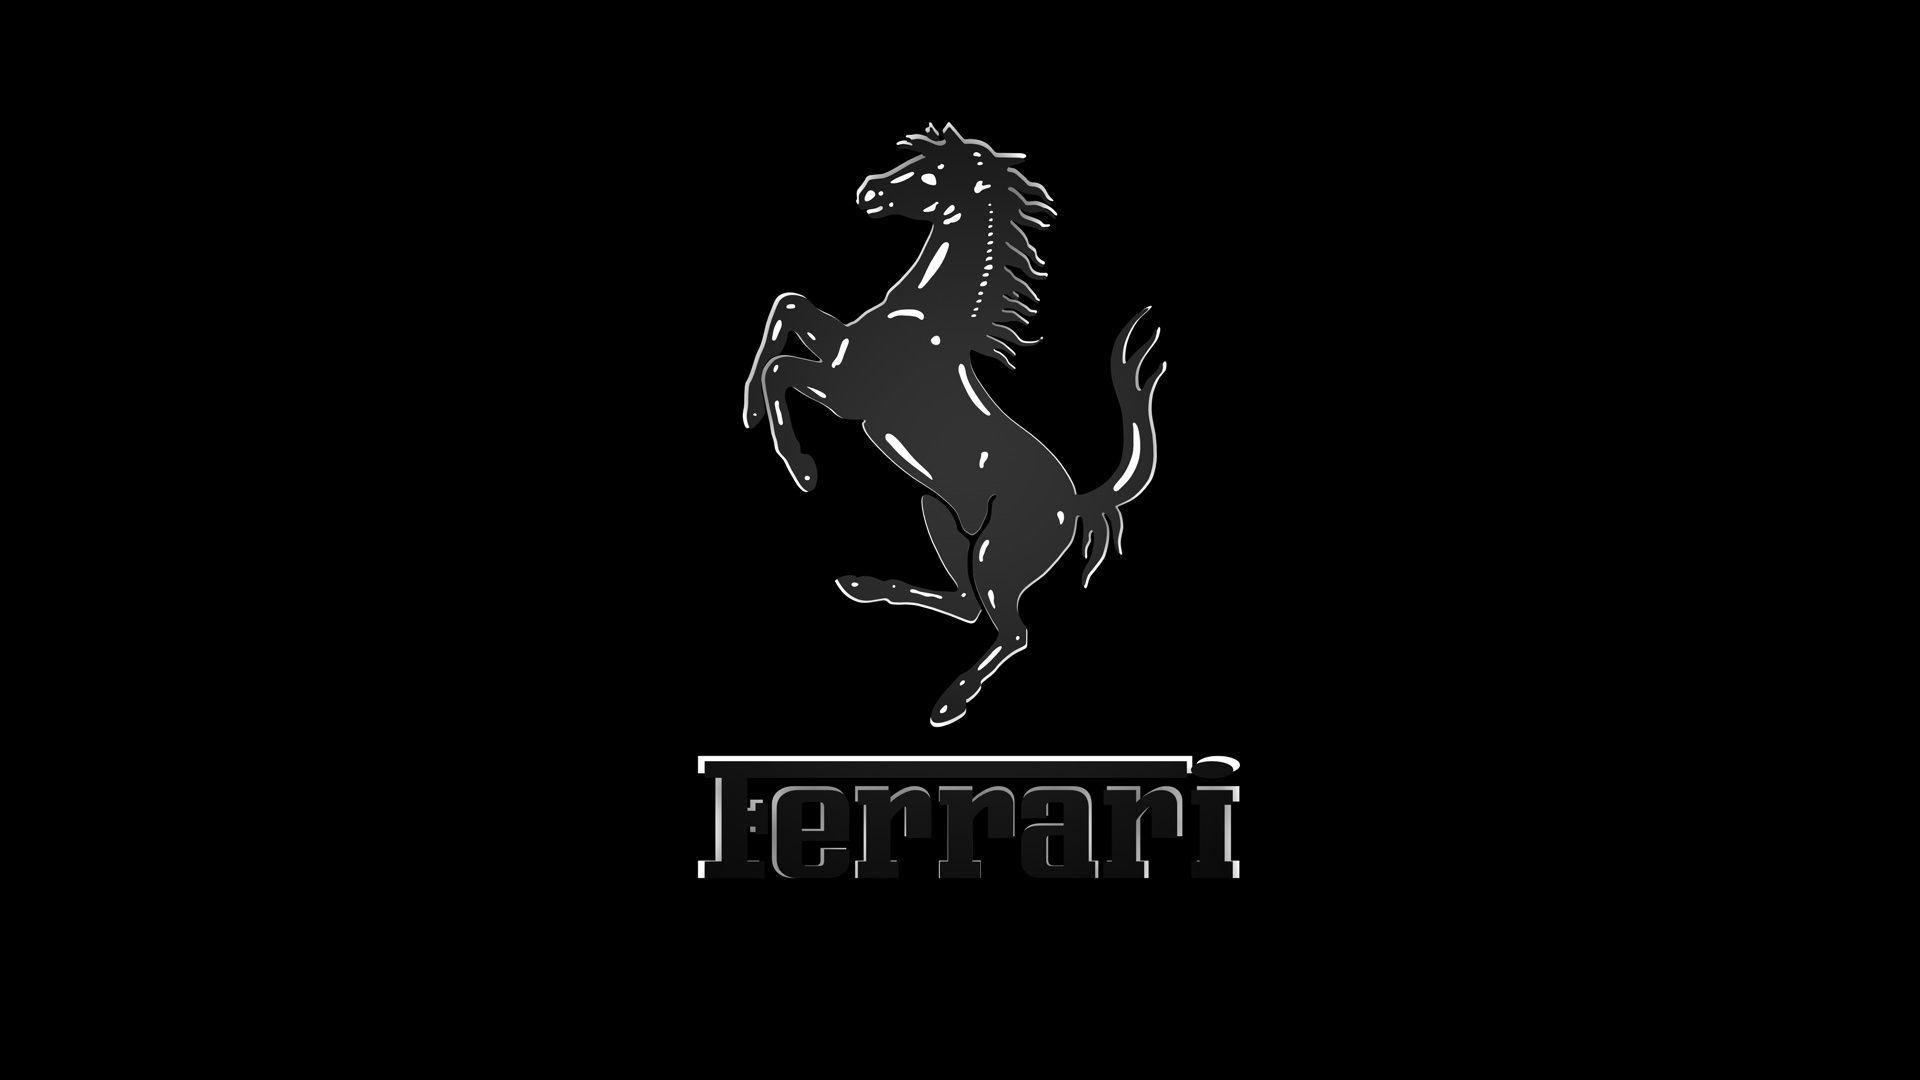 Ferrari Logo Wallpaper Free Ferrari Logo Background